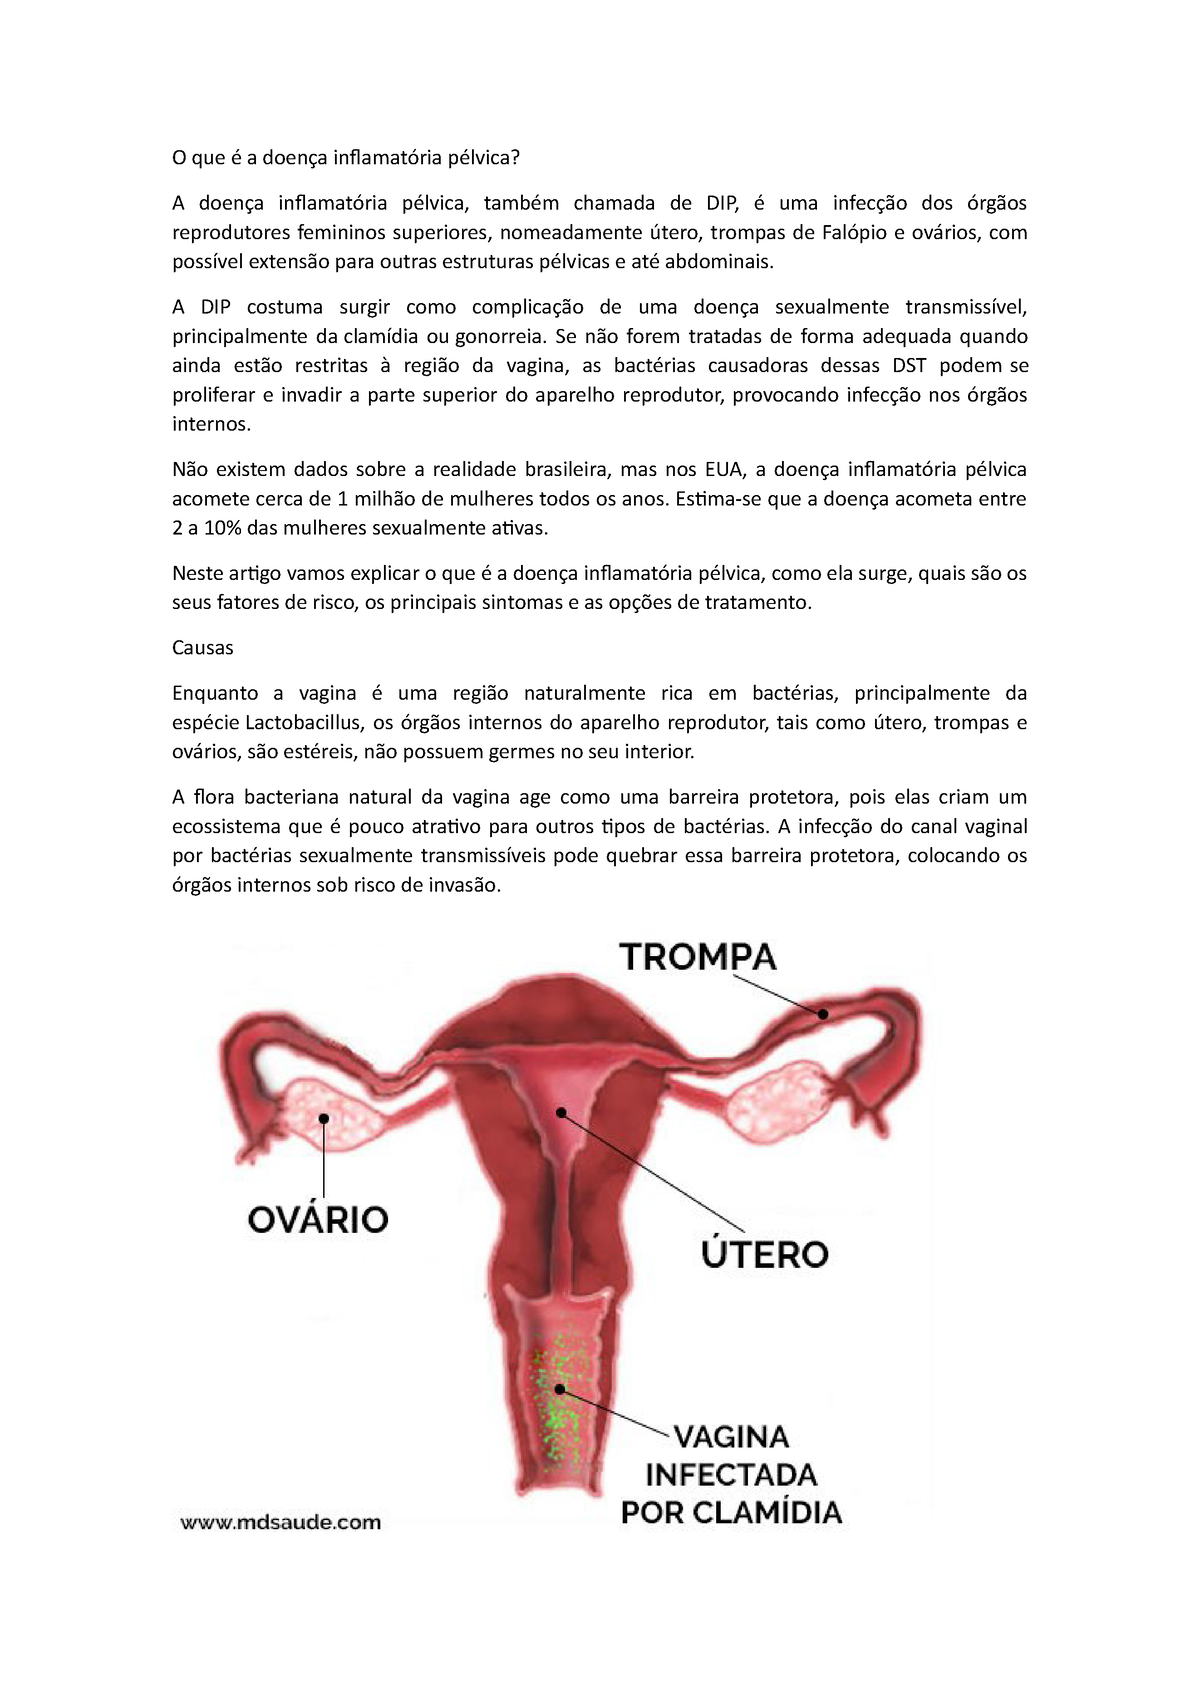 Dr. Carlos Roberto - Ginecologia - A DIPA (Doença Inflamatória Pélvica  Aguda) é uma infecção dos órgãos reprodutivos femininos (útero, trompas e  ovários). ▫ A DIPA ocorre quando bactérias patogênicas proliferam na